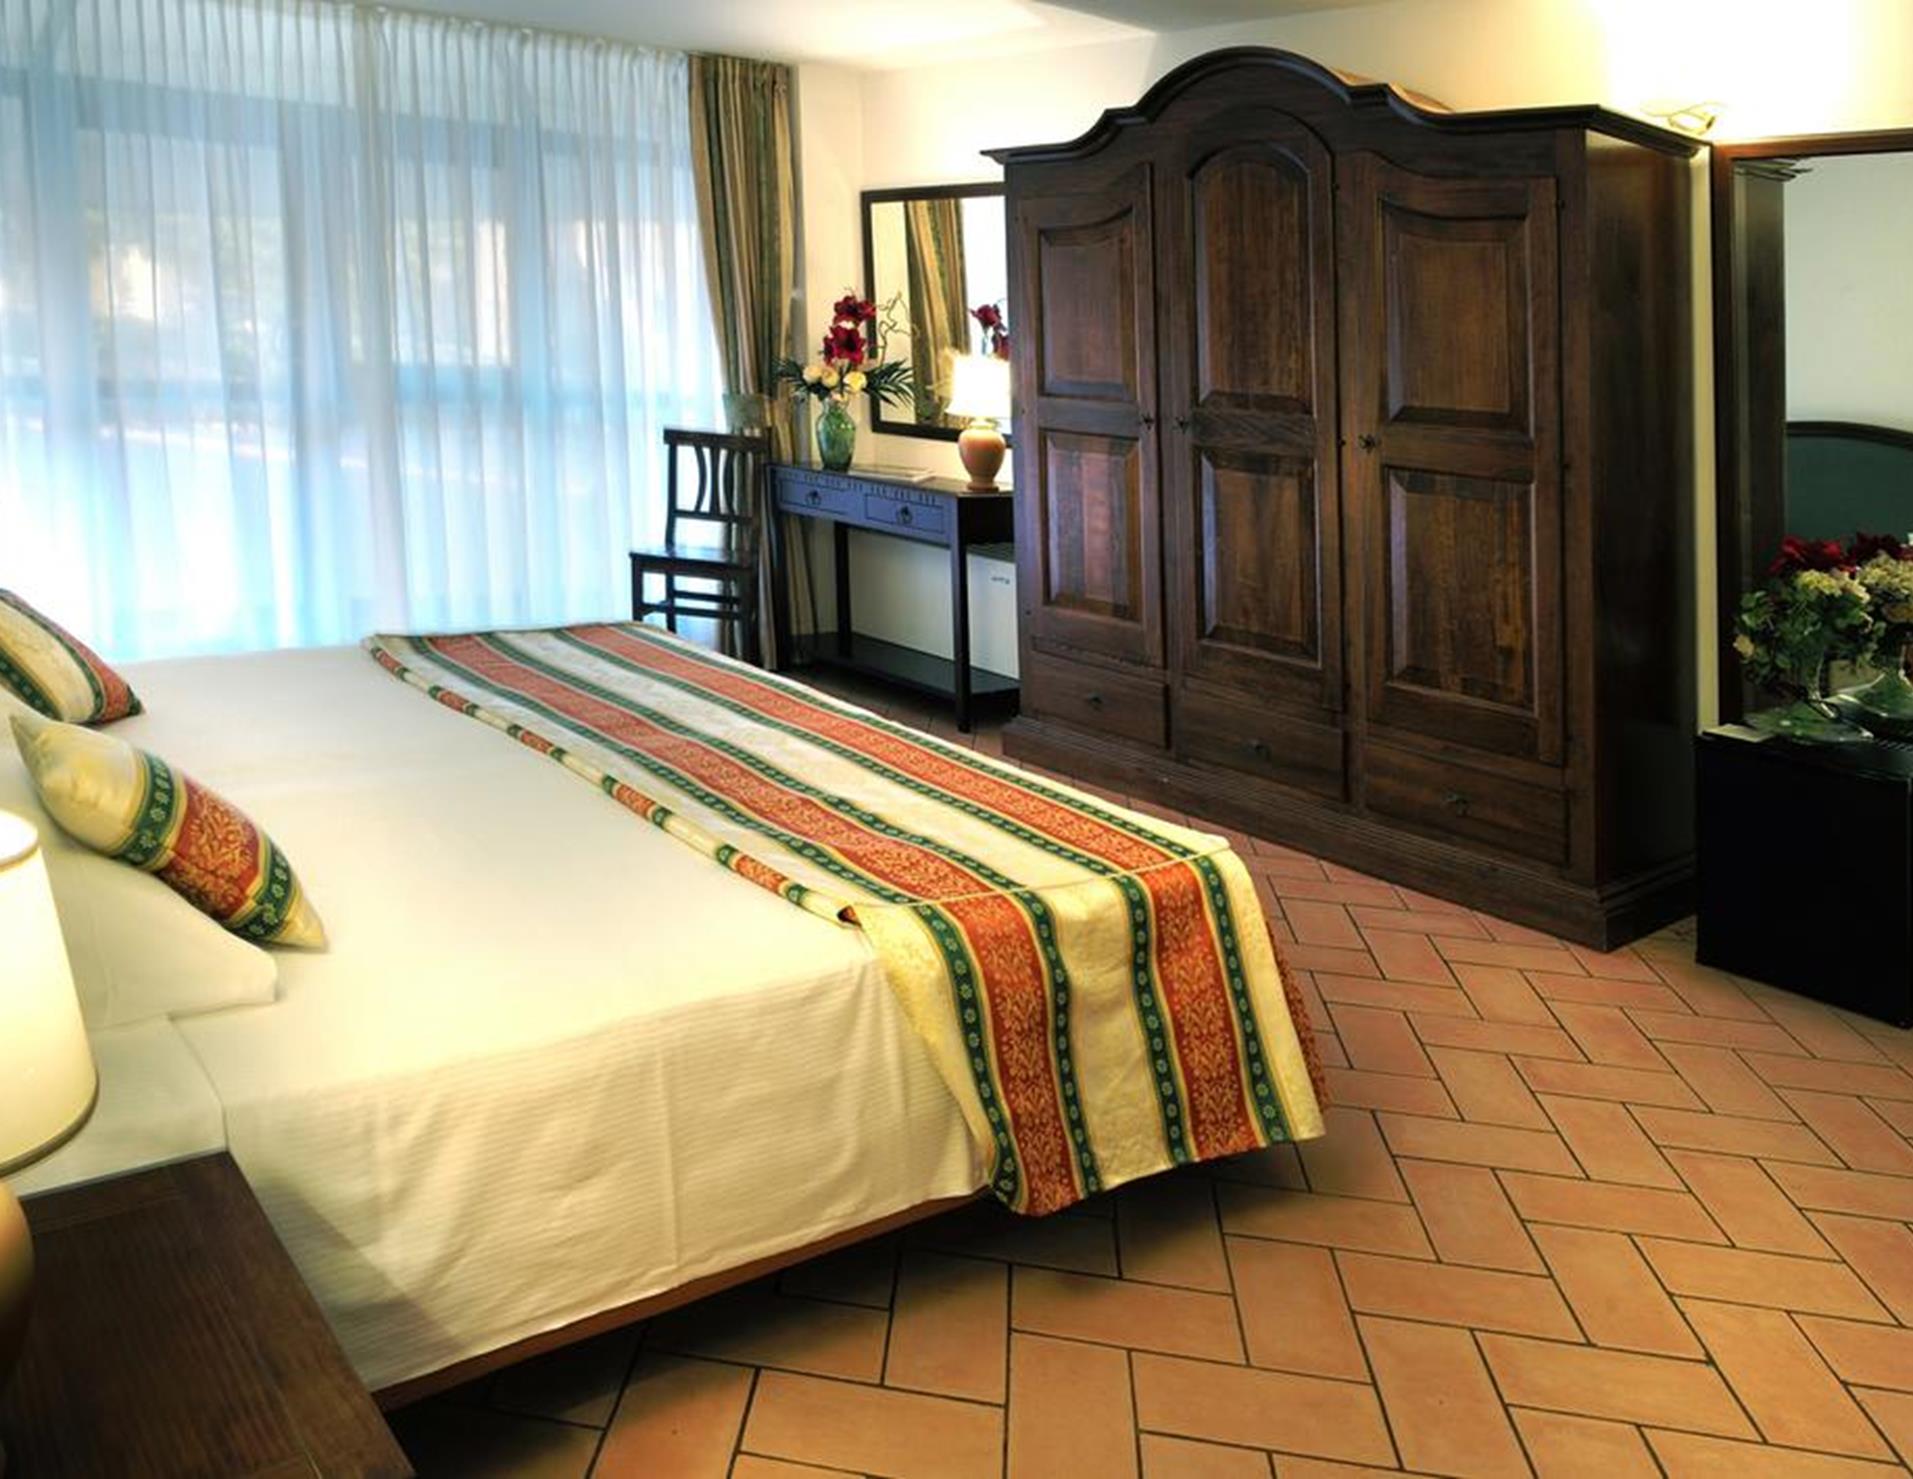 Hotel Villa Cariola - Room